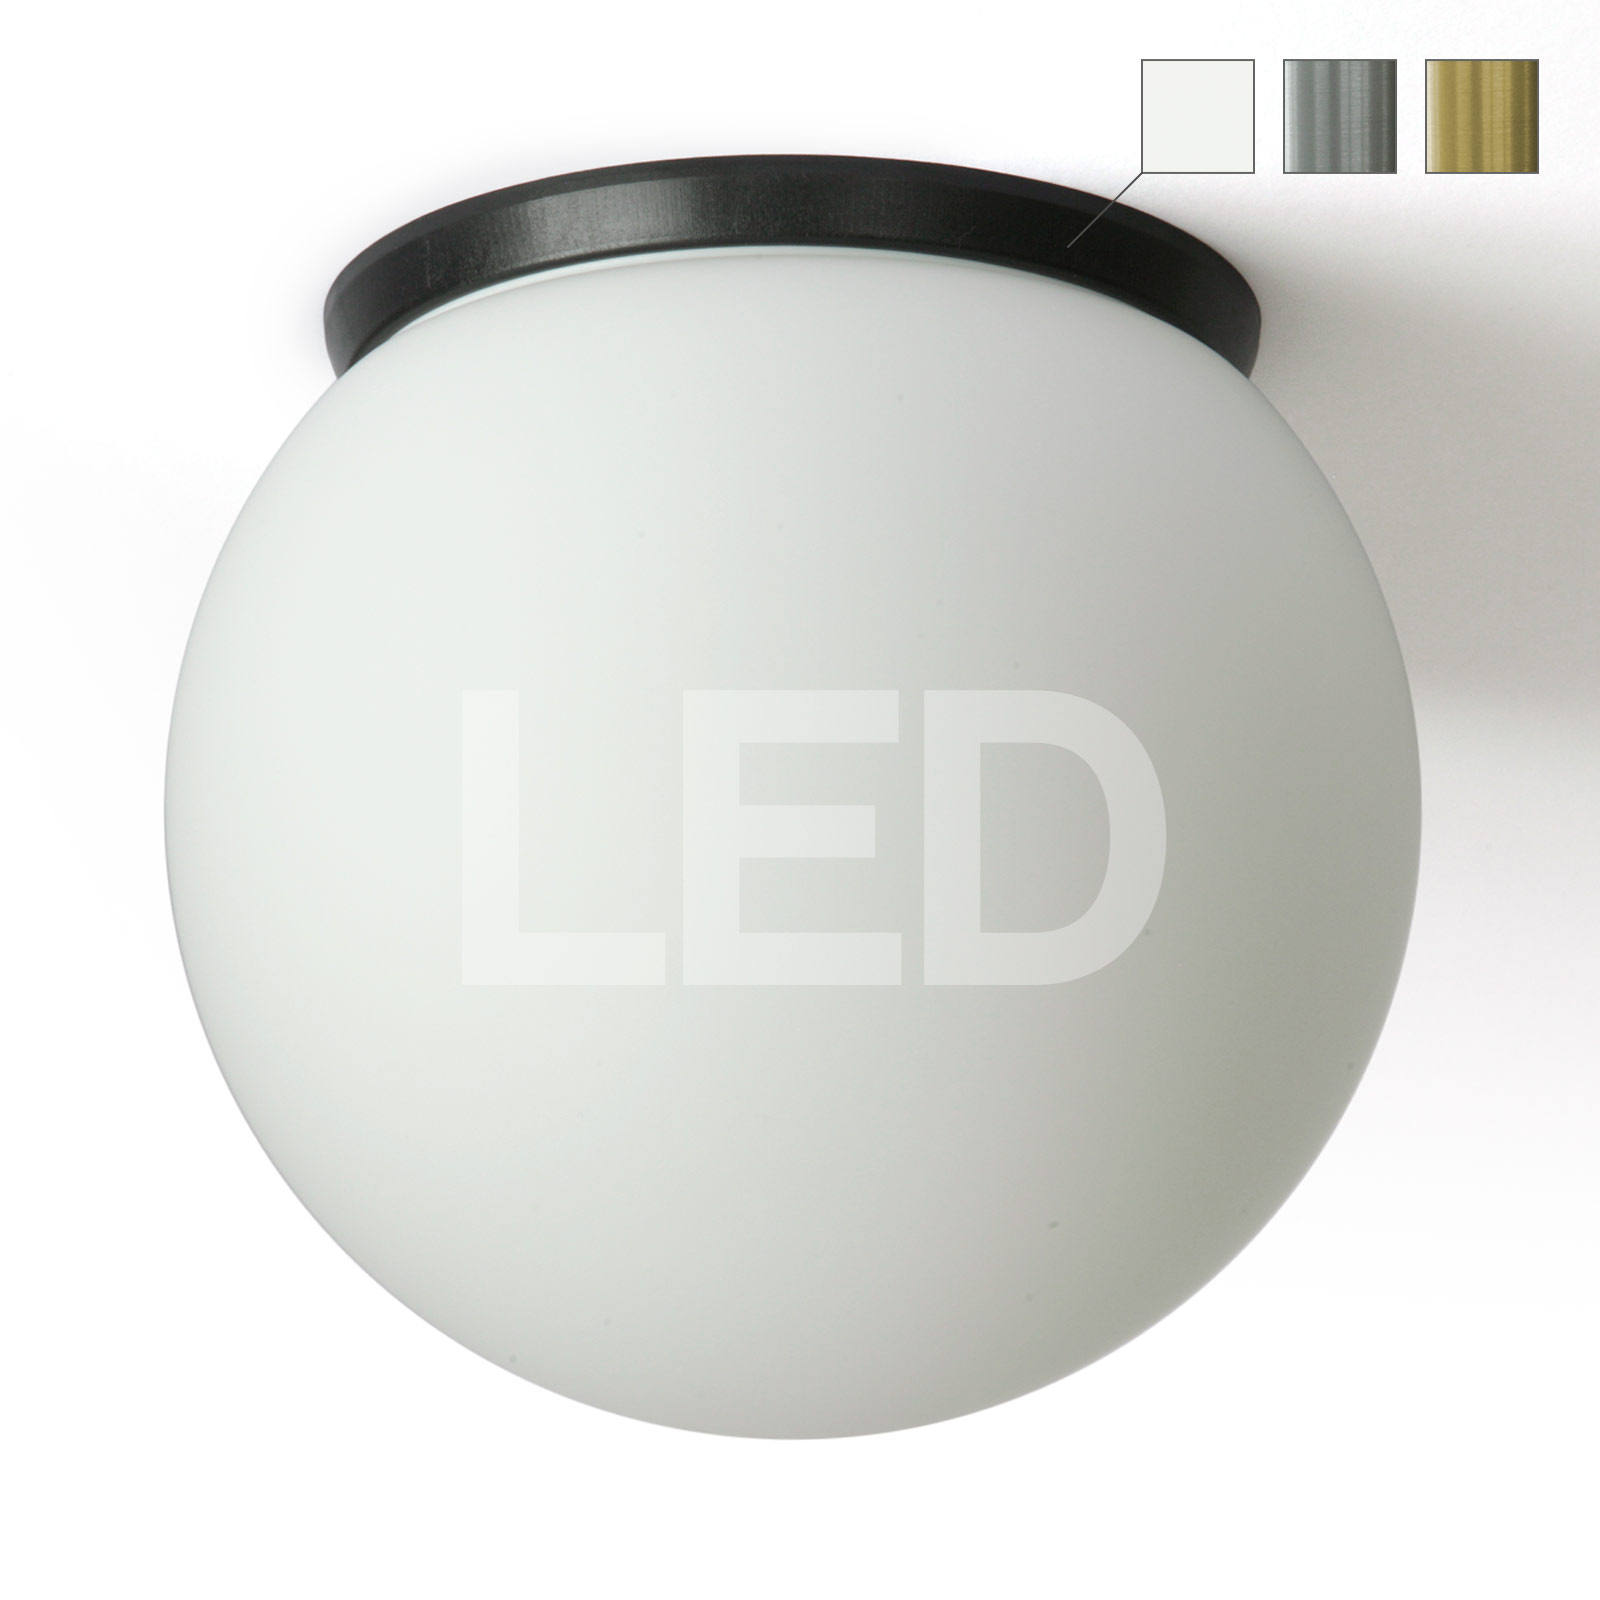 Schlichte LED-Deckenleuchte mit Kugel-Opalglas SPHERA, IP65, Ø 20–40 cm: LED-Deckenleuchte Kugel: überzeugt mit samtig-mattem Glas (hier Ø 20 cm) und hochwertiger LED-Technik